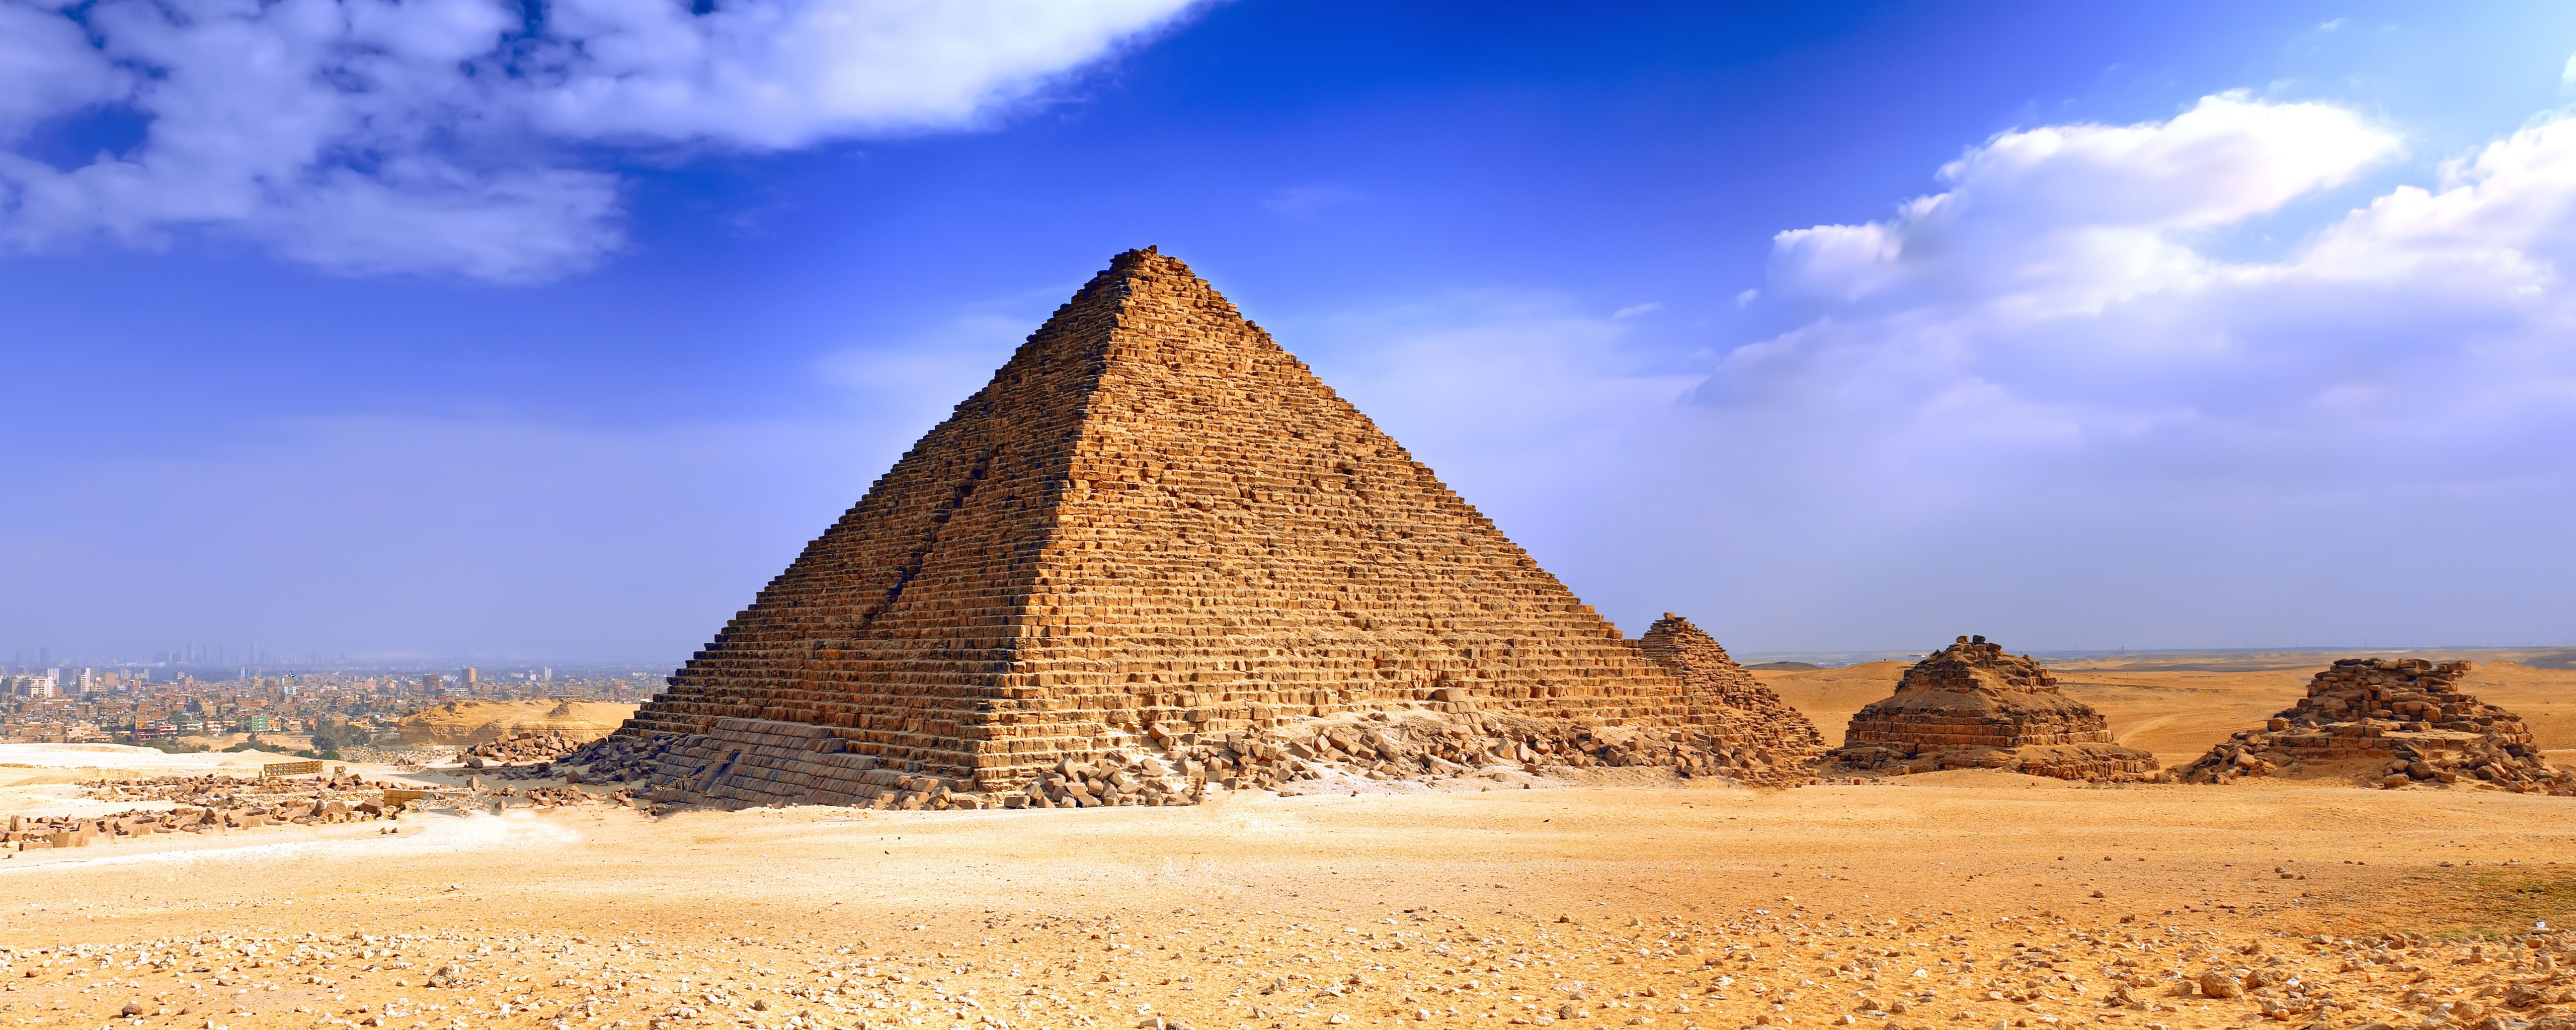 The Great Pyramid, Giza, Egypt загрузить